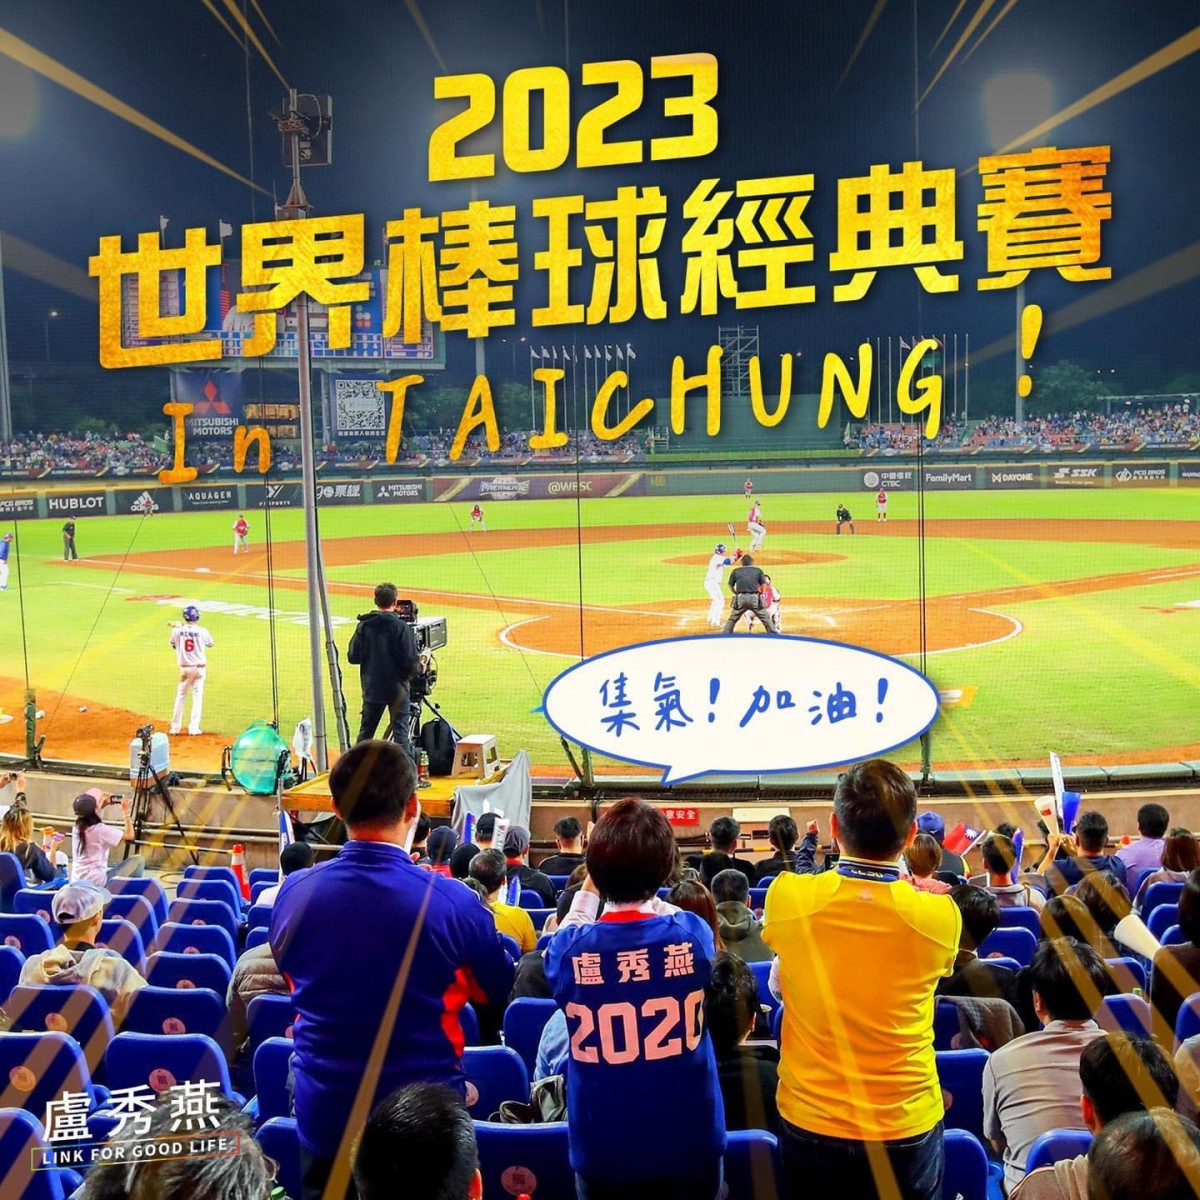 2023世界棒球經典賽在台中。